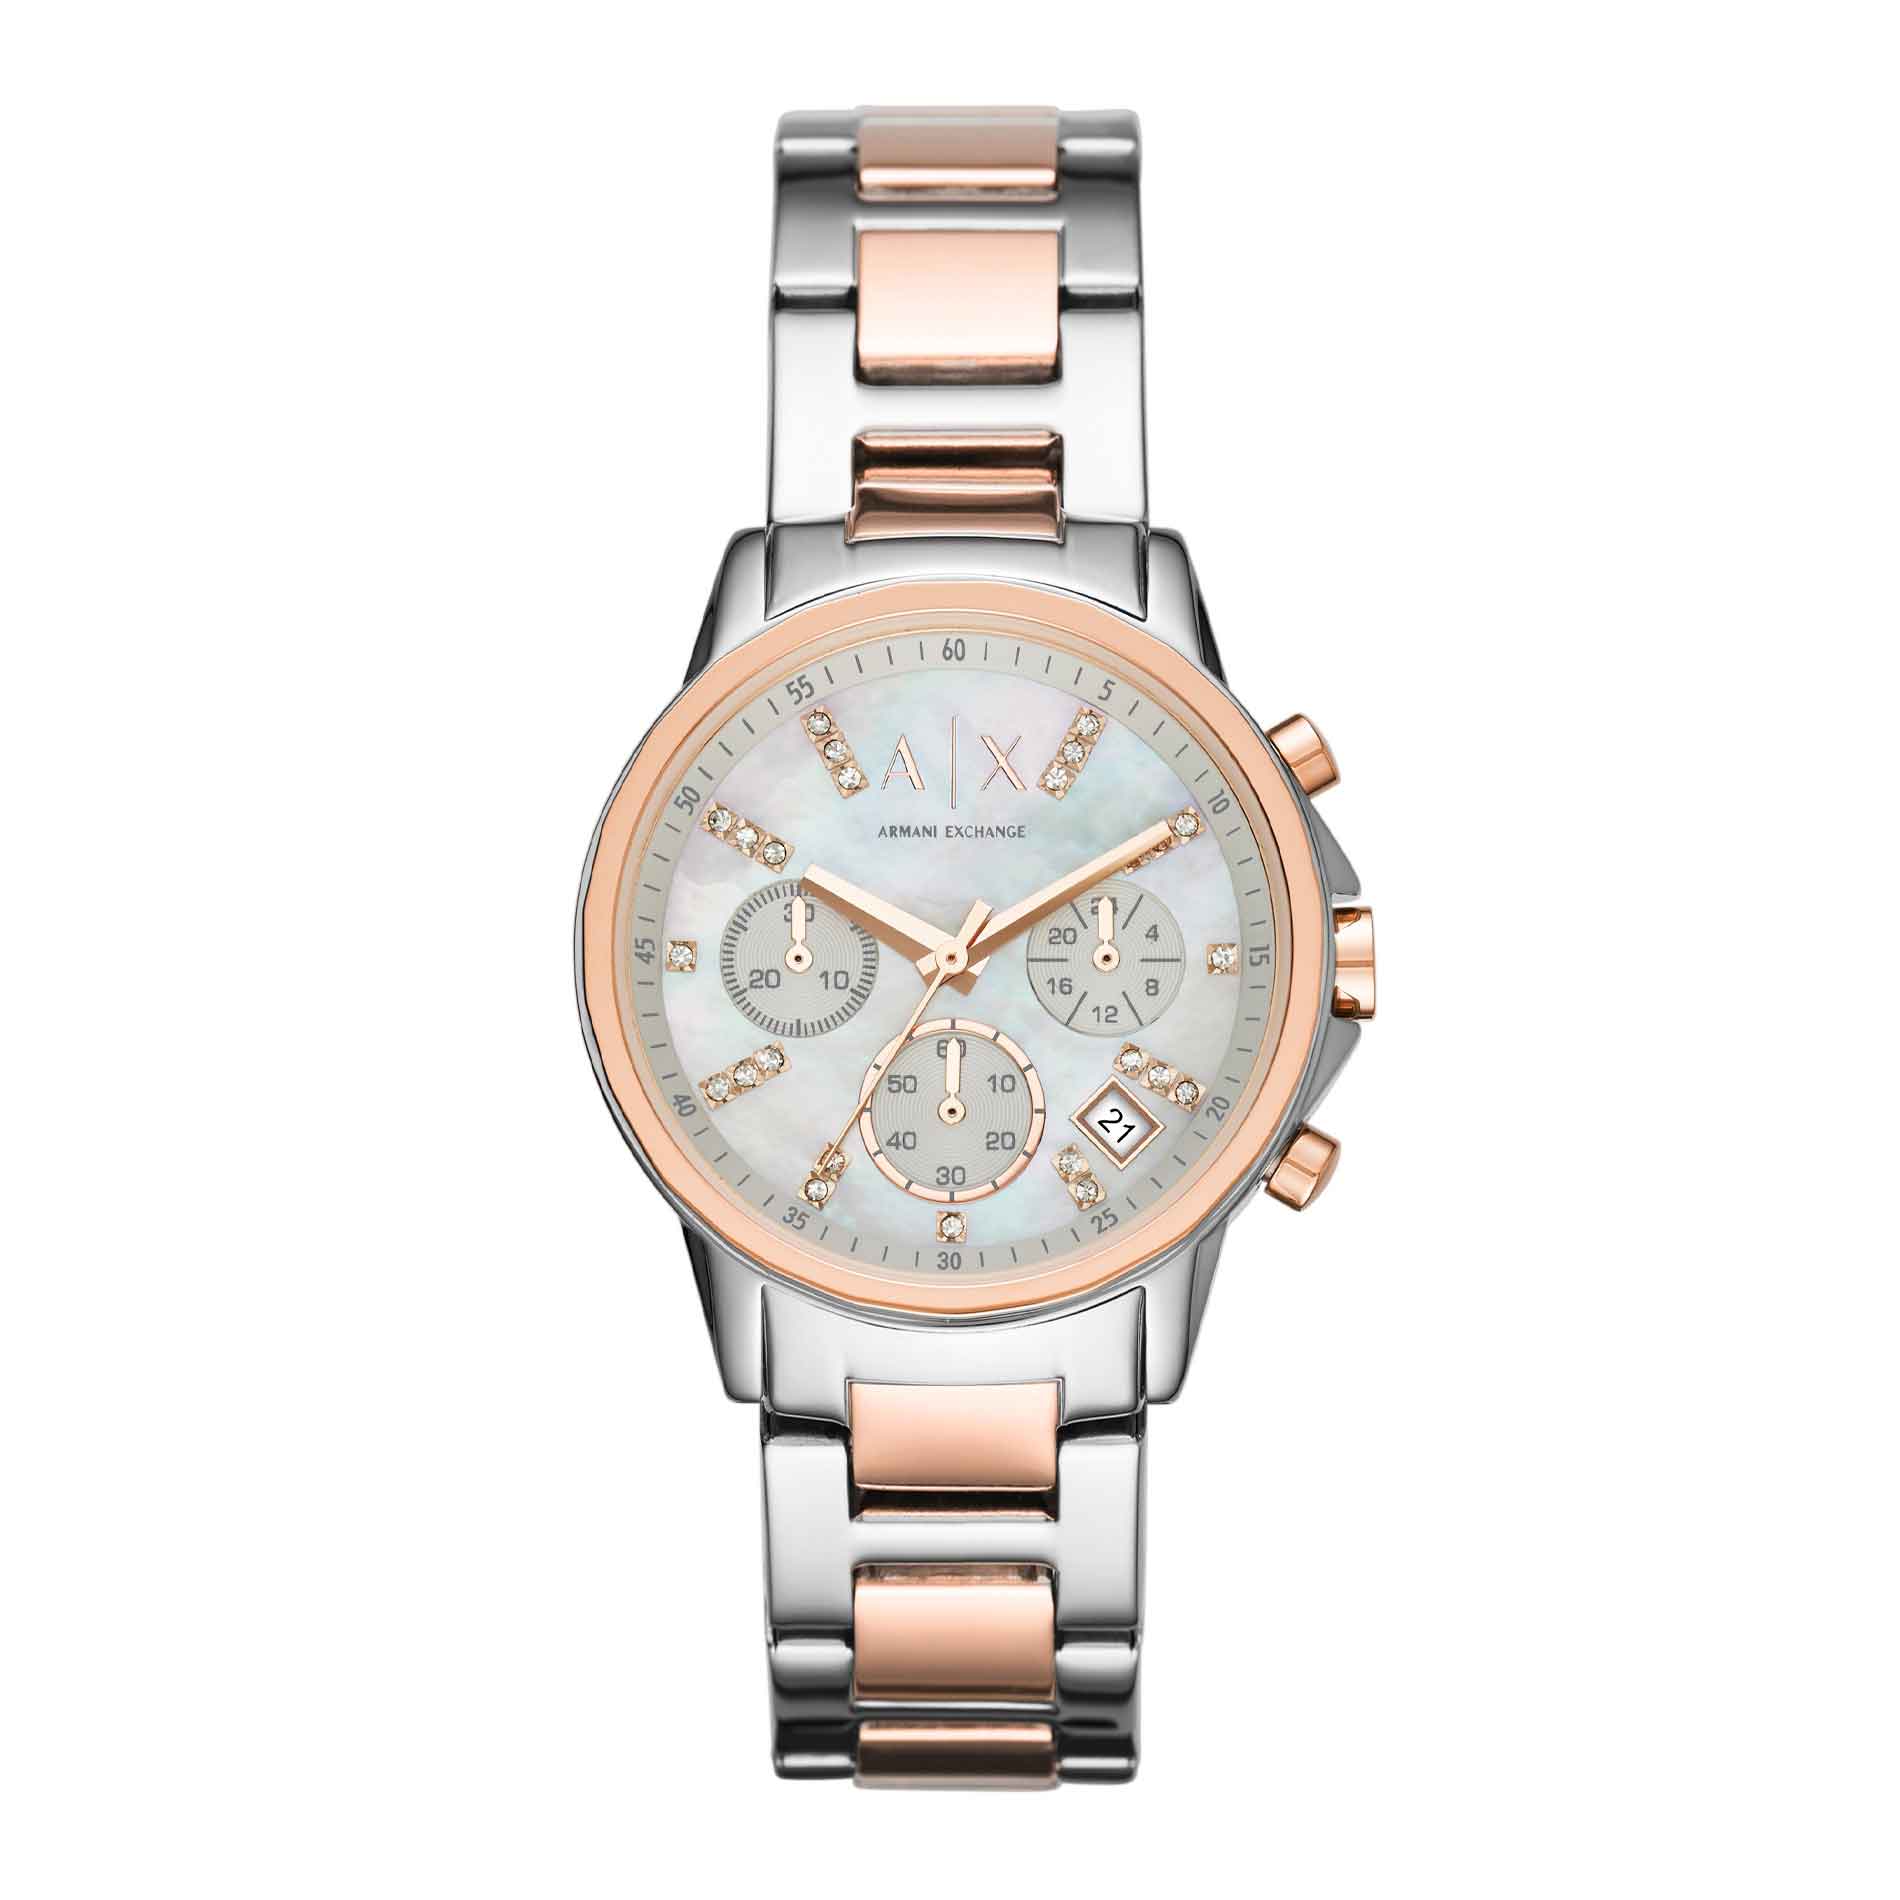 Armani Exchange AX4331 dame armbåndsur med stål/rosaguld-lænke og perlemor urskive. Uret er set forfra.